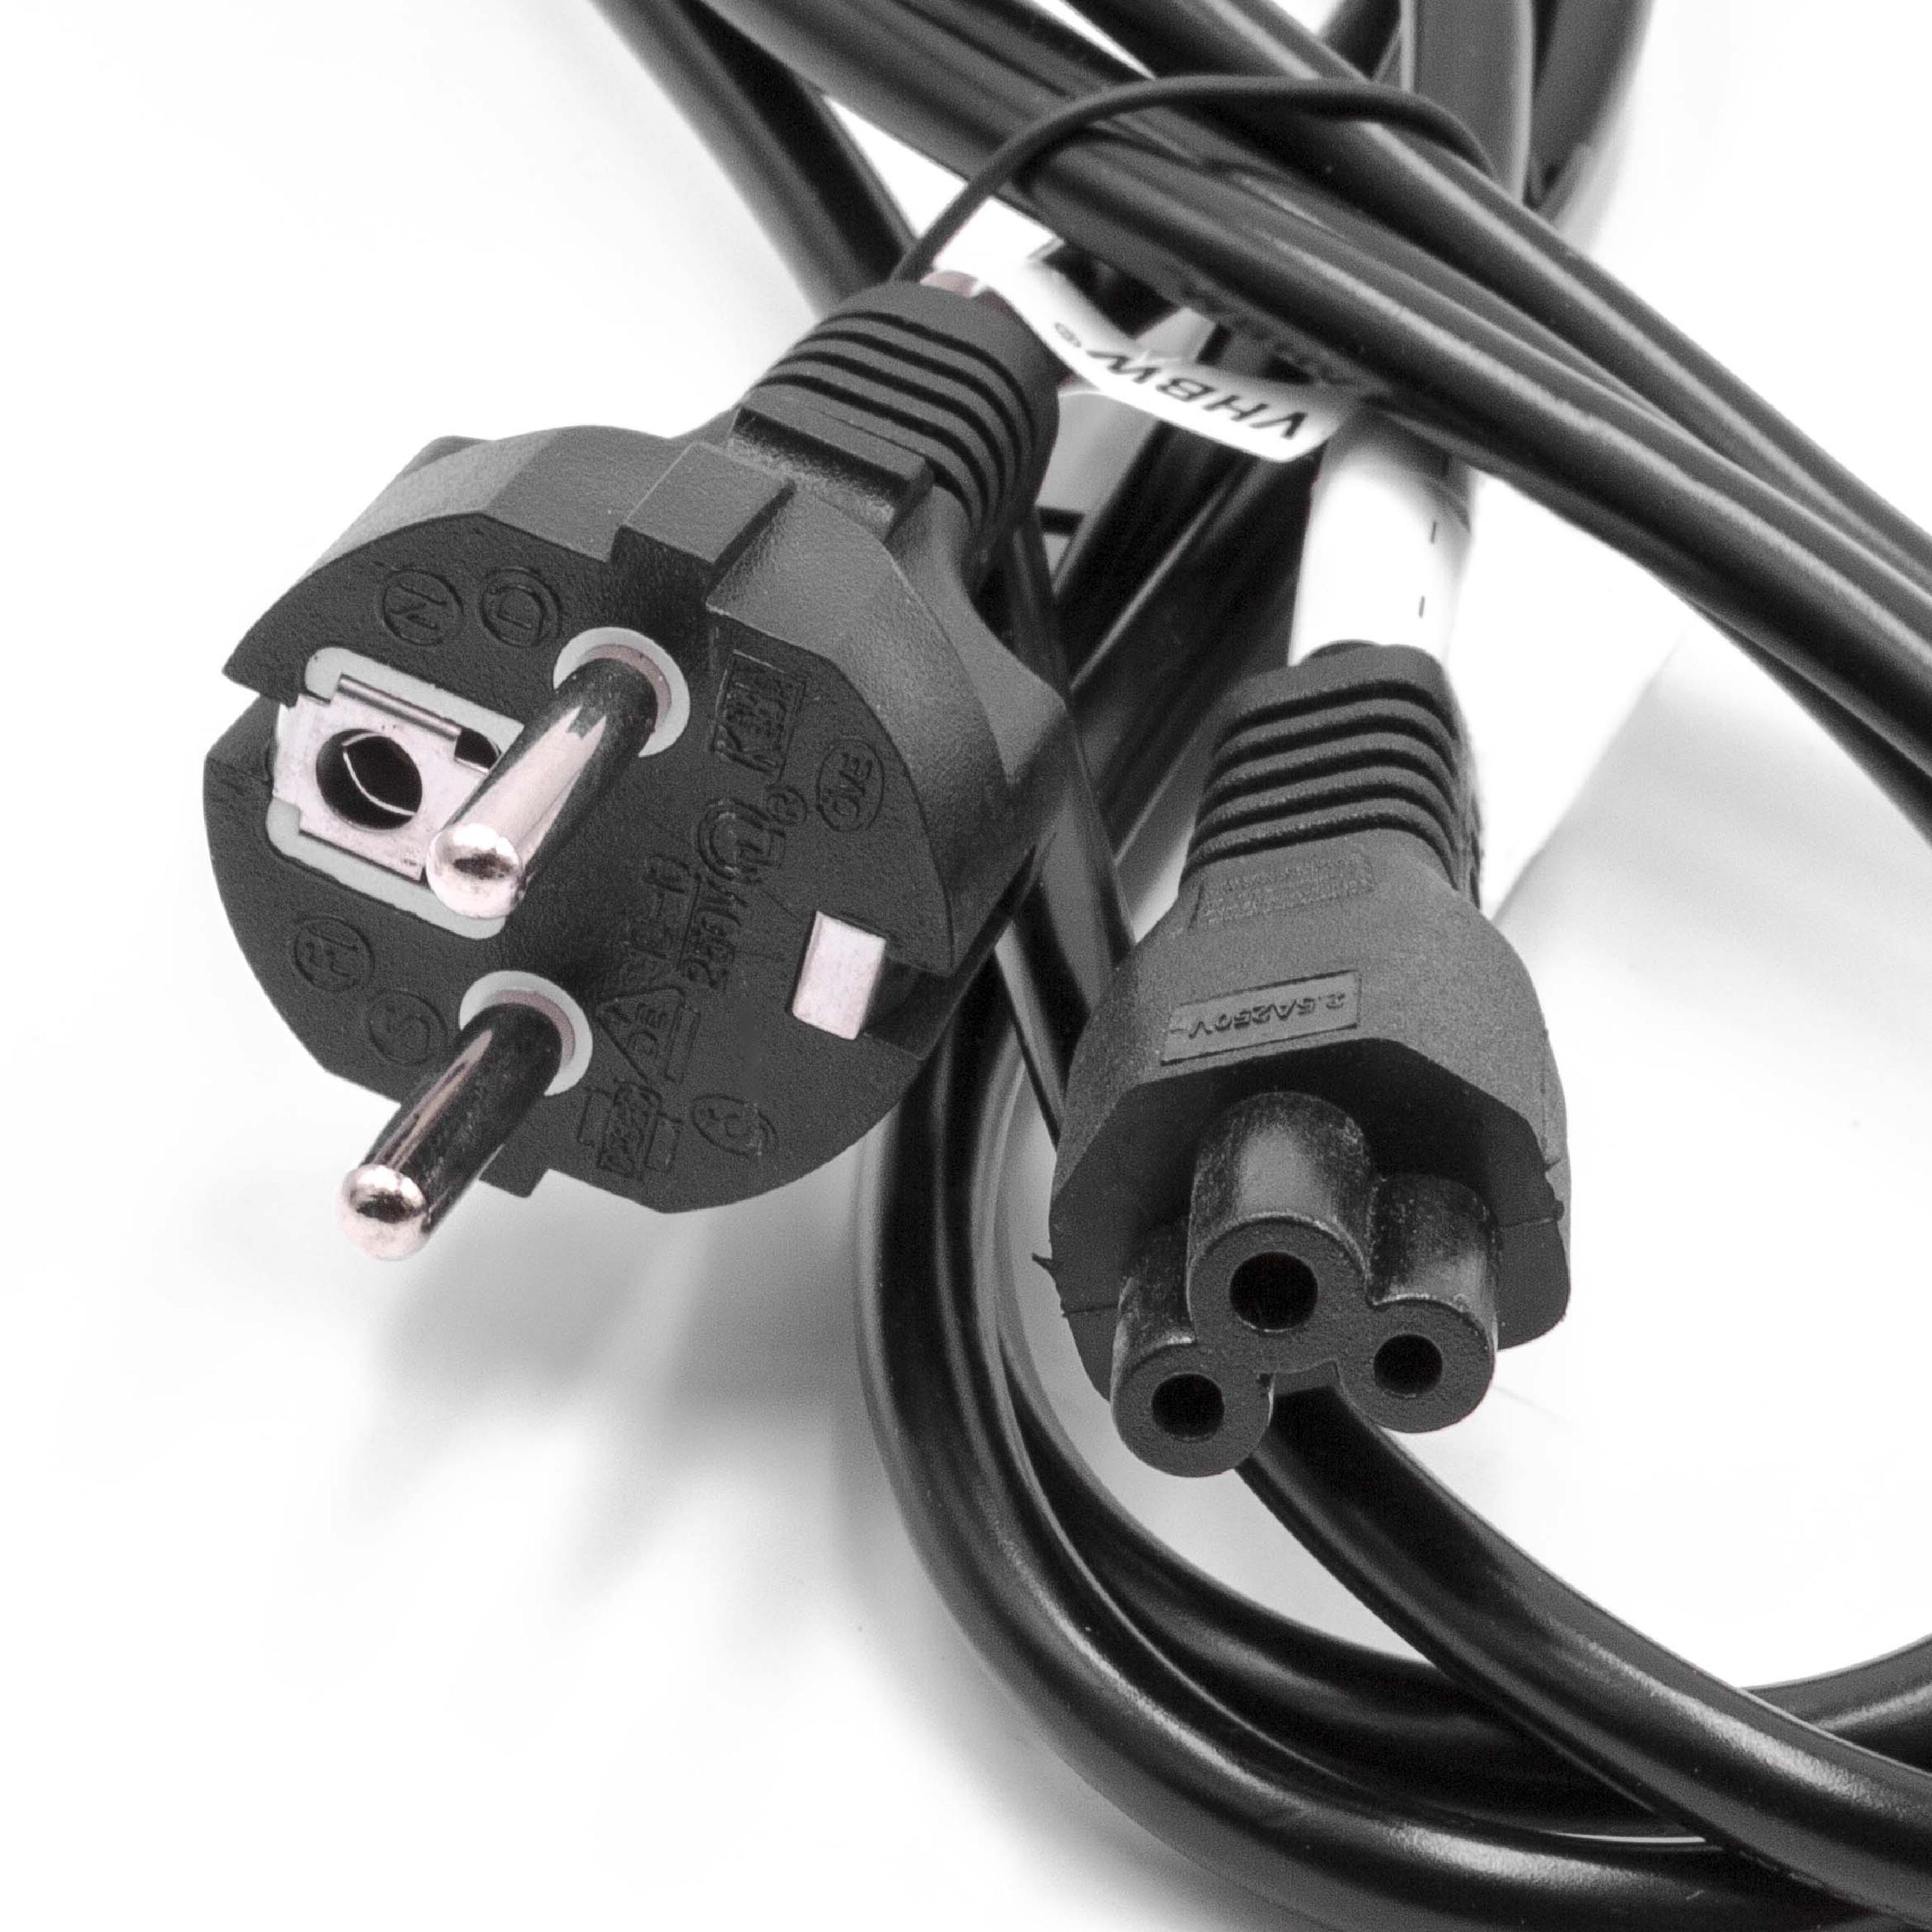 Cable de red C5 euroconector compatible con robot aspirador - 2 m